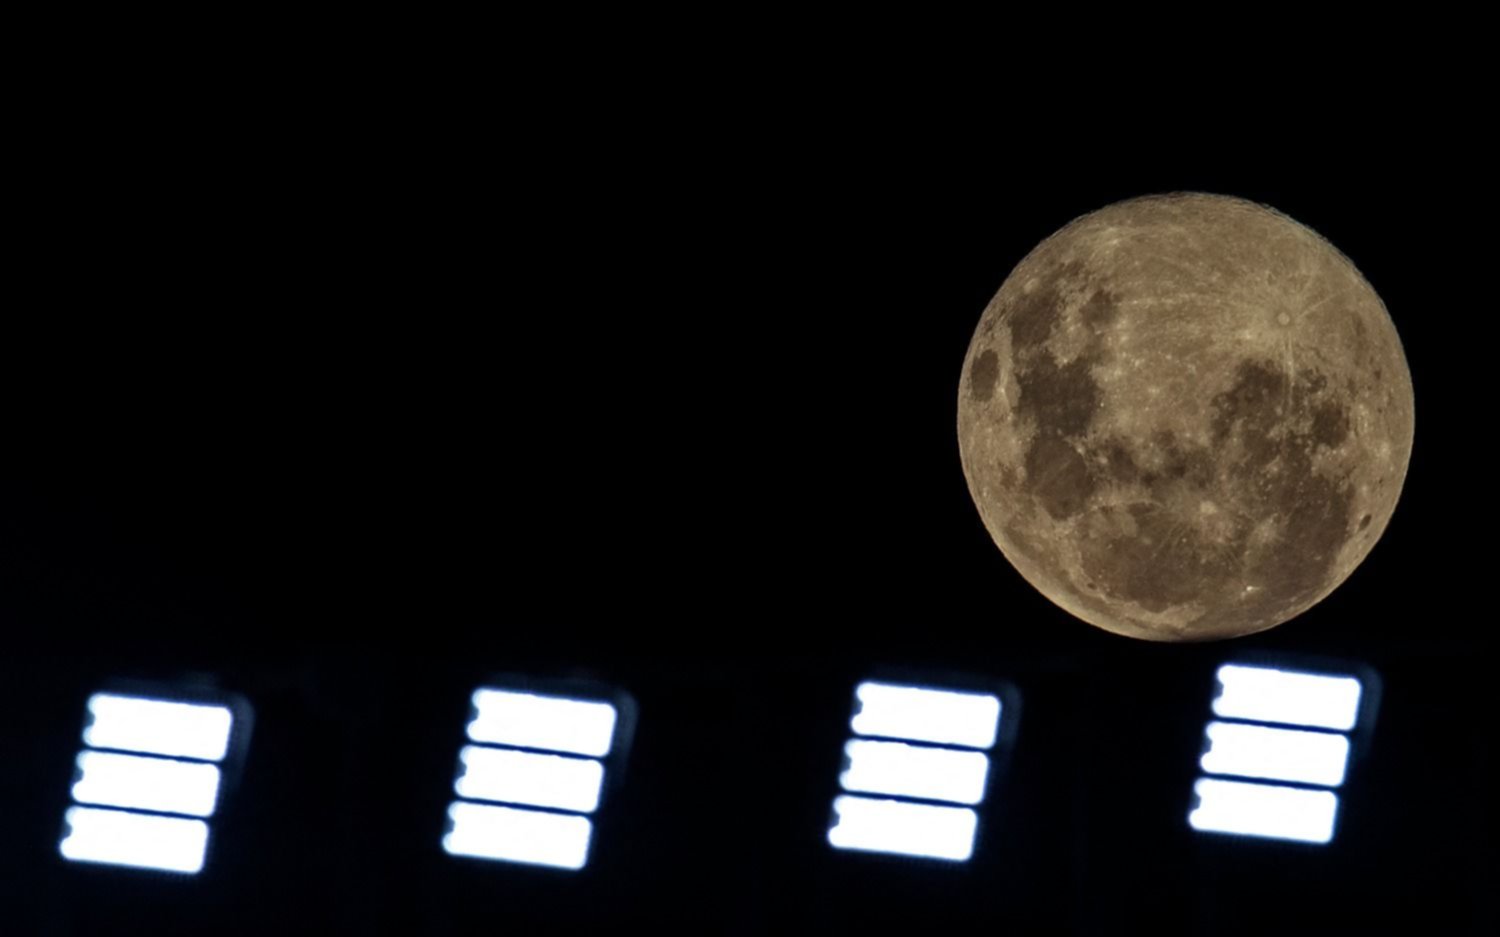 La "Superluna" puede verse esta noche con mayor brillo y tamaño de lo habitual